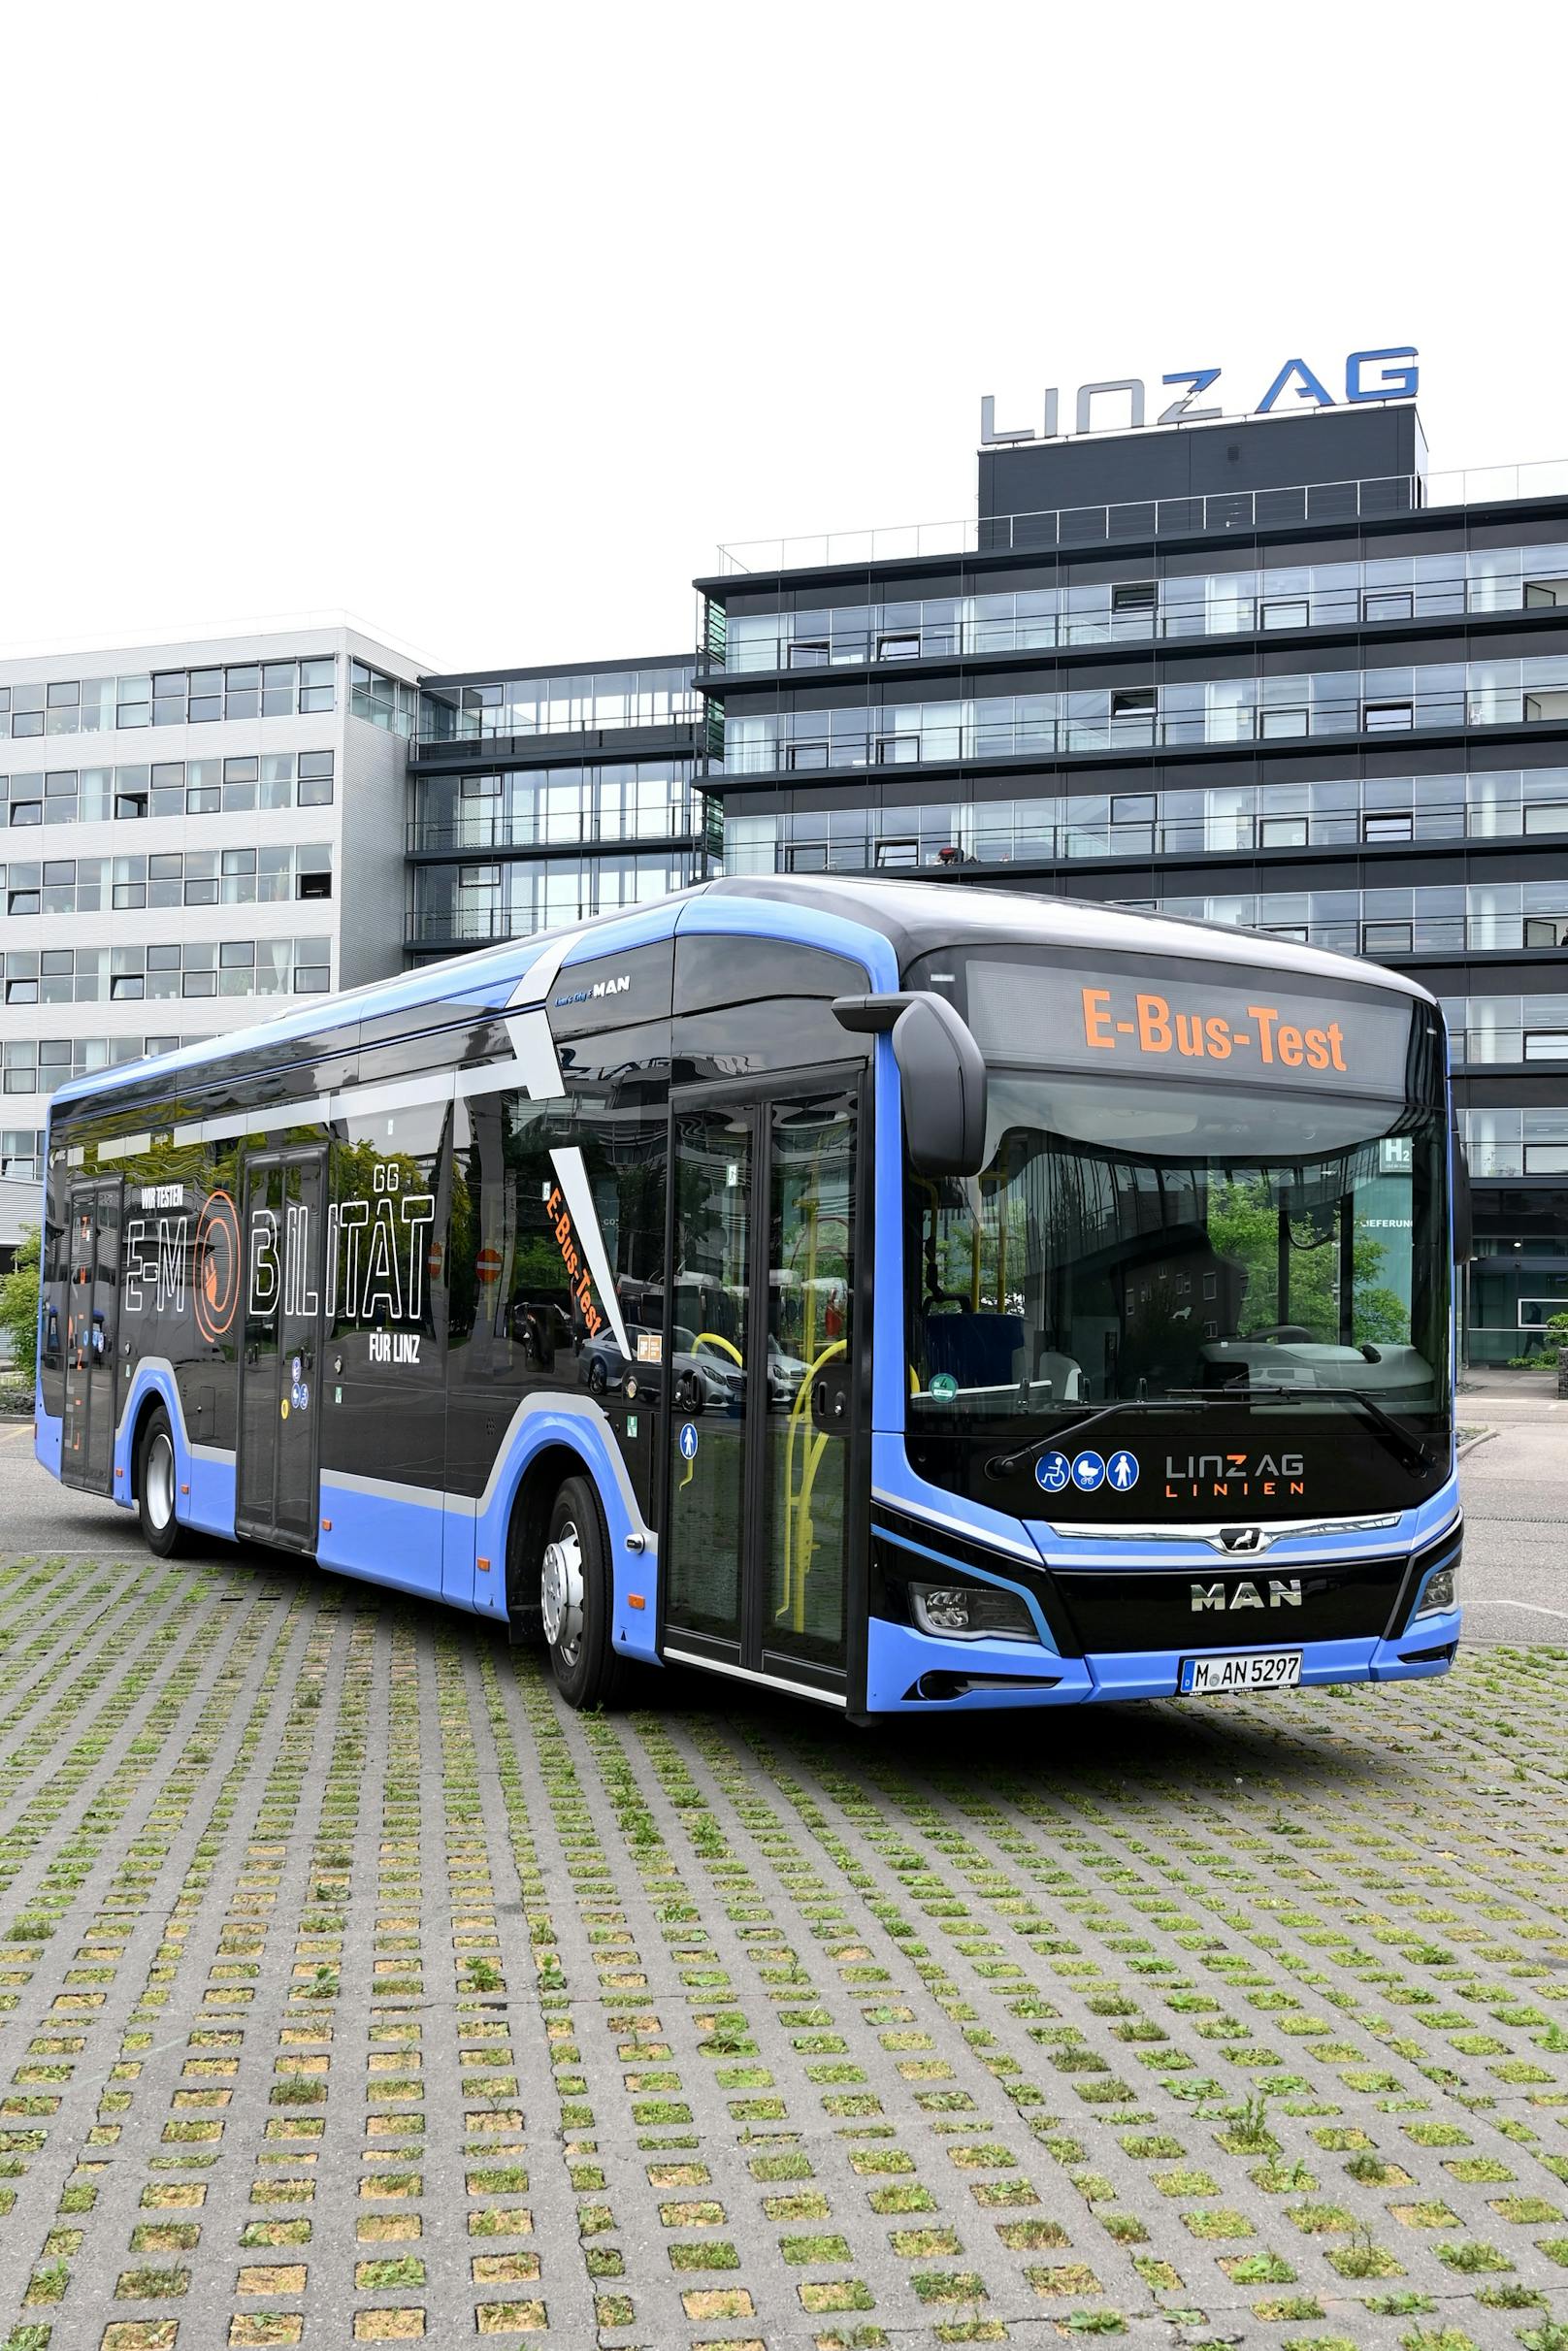 Der Bus im ungewöhnlichen blauen Design.